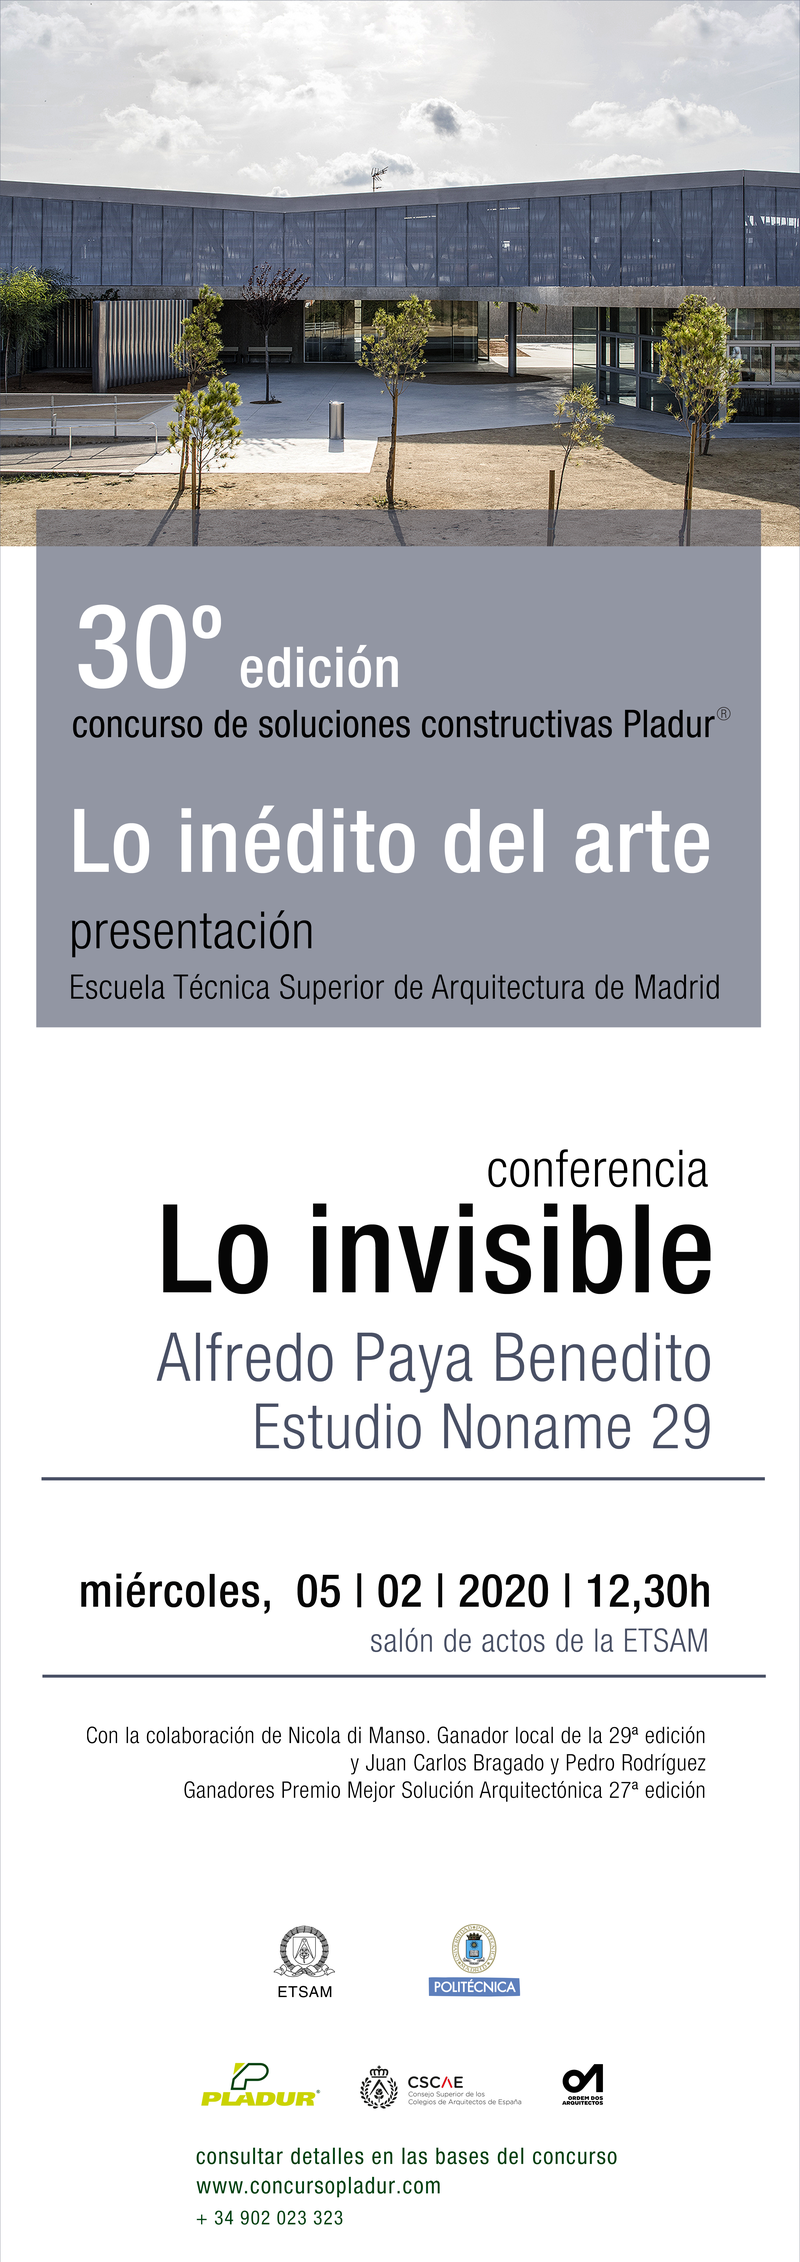 Conferencia: Lo invisible